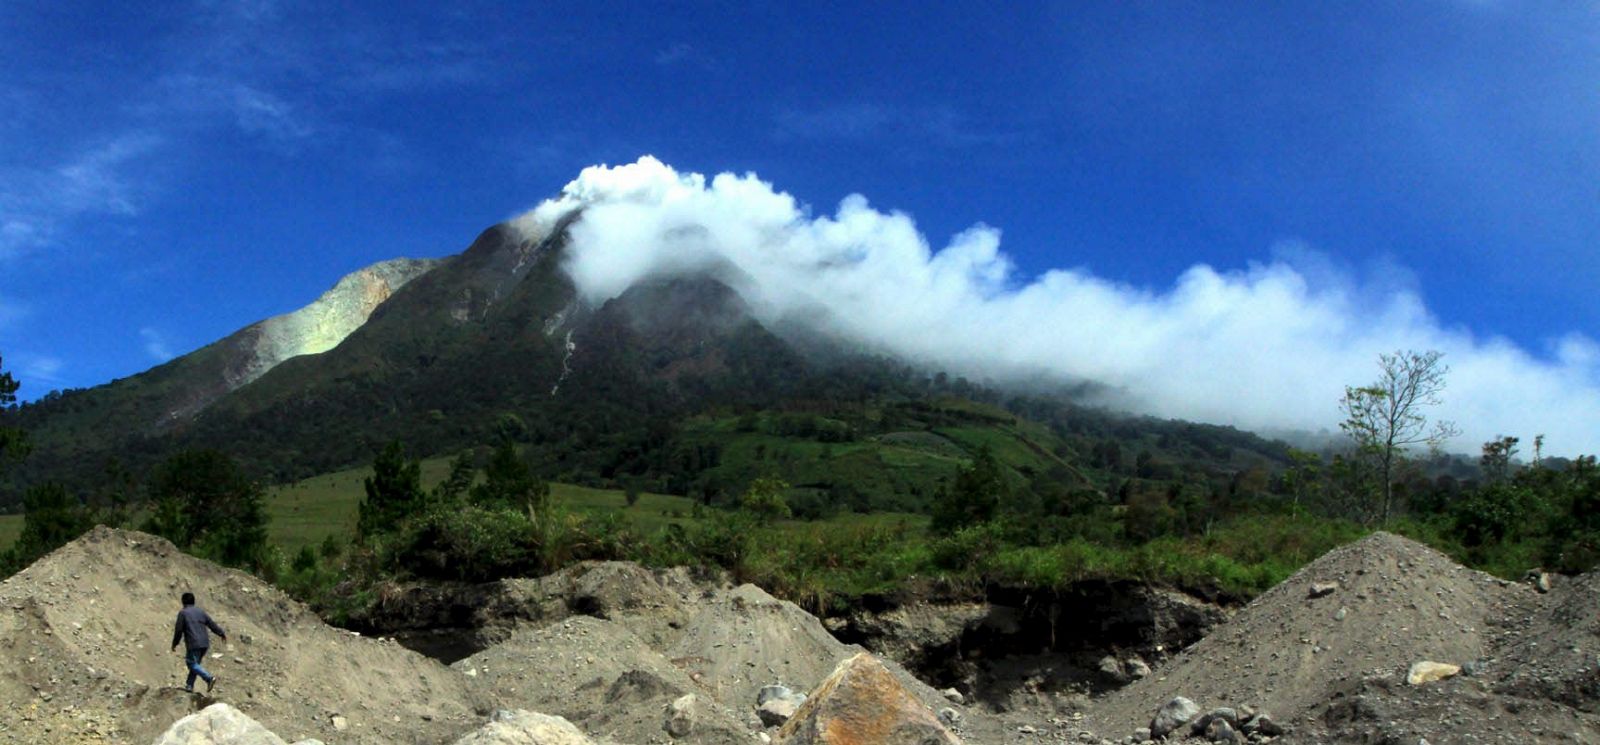 El volcán Sinabung, de 2.451 metros de altitud entró en erupción, lanzando al aíre ceniza, humo y arrojando lava por su cráter.